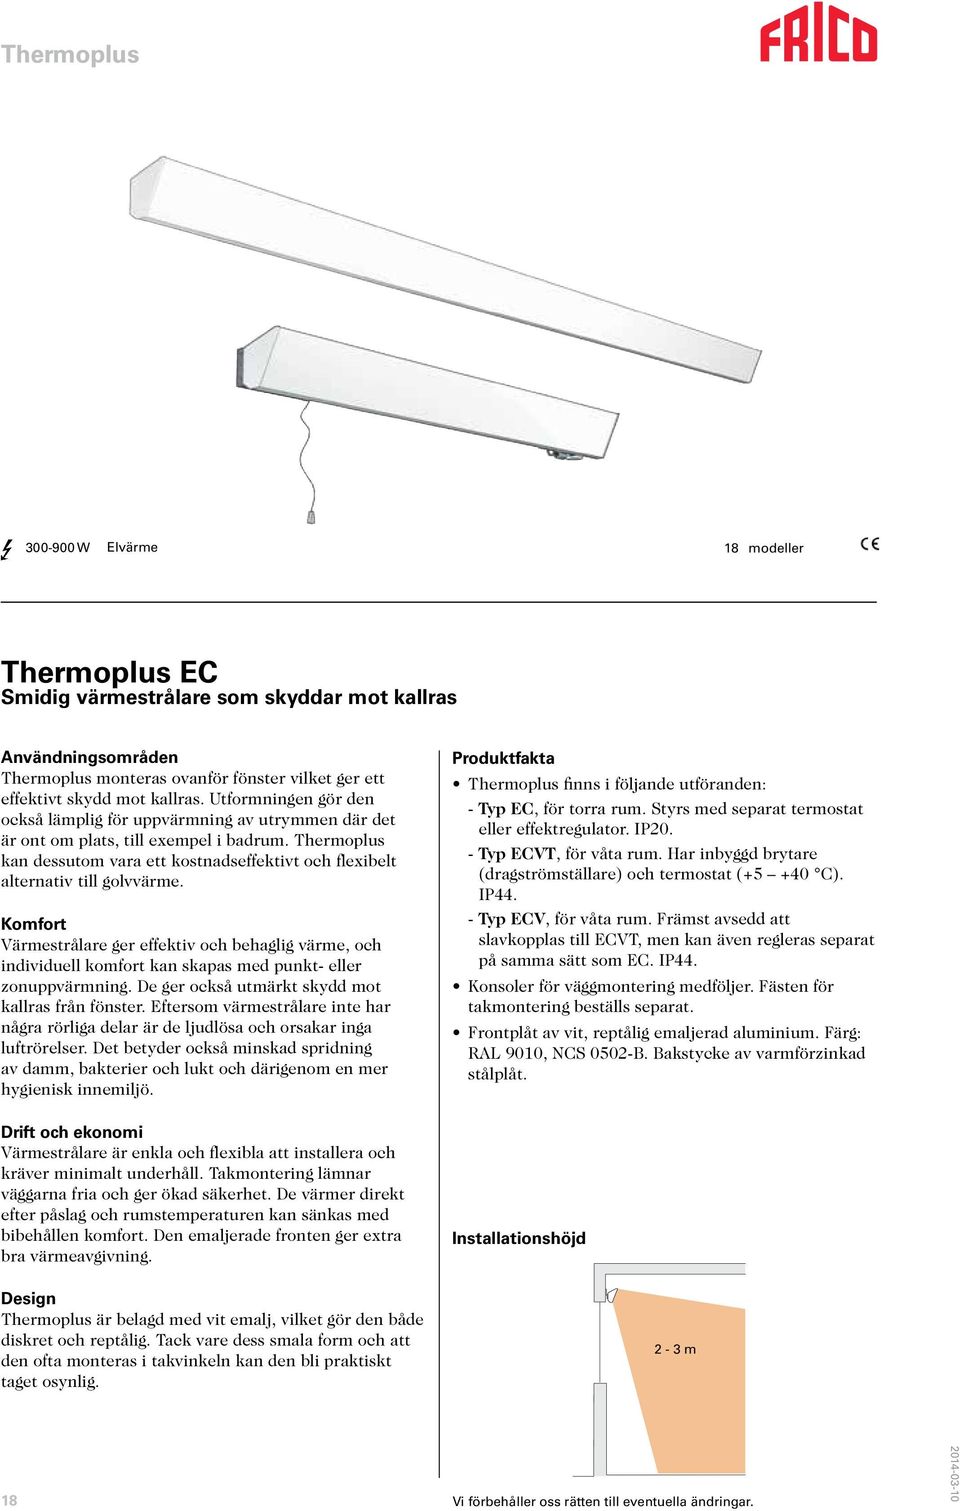 Thermoplus kan dessutom vara ett kostnadseffektivt och flexibelt alternativ till golvvärme.